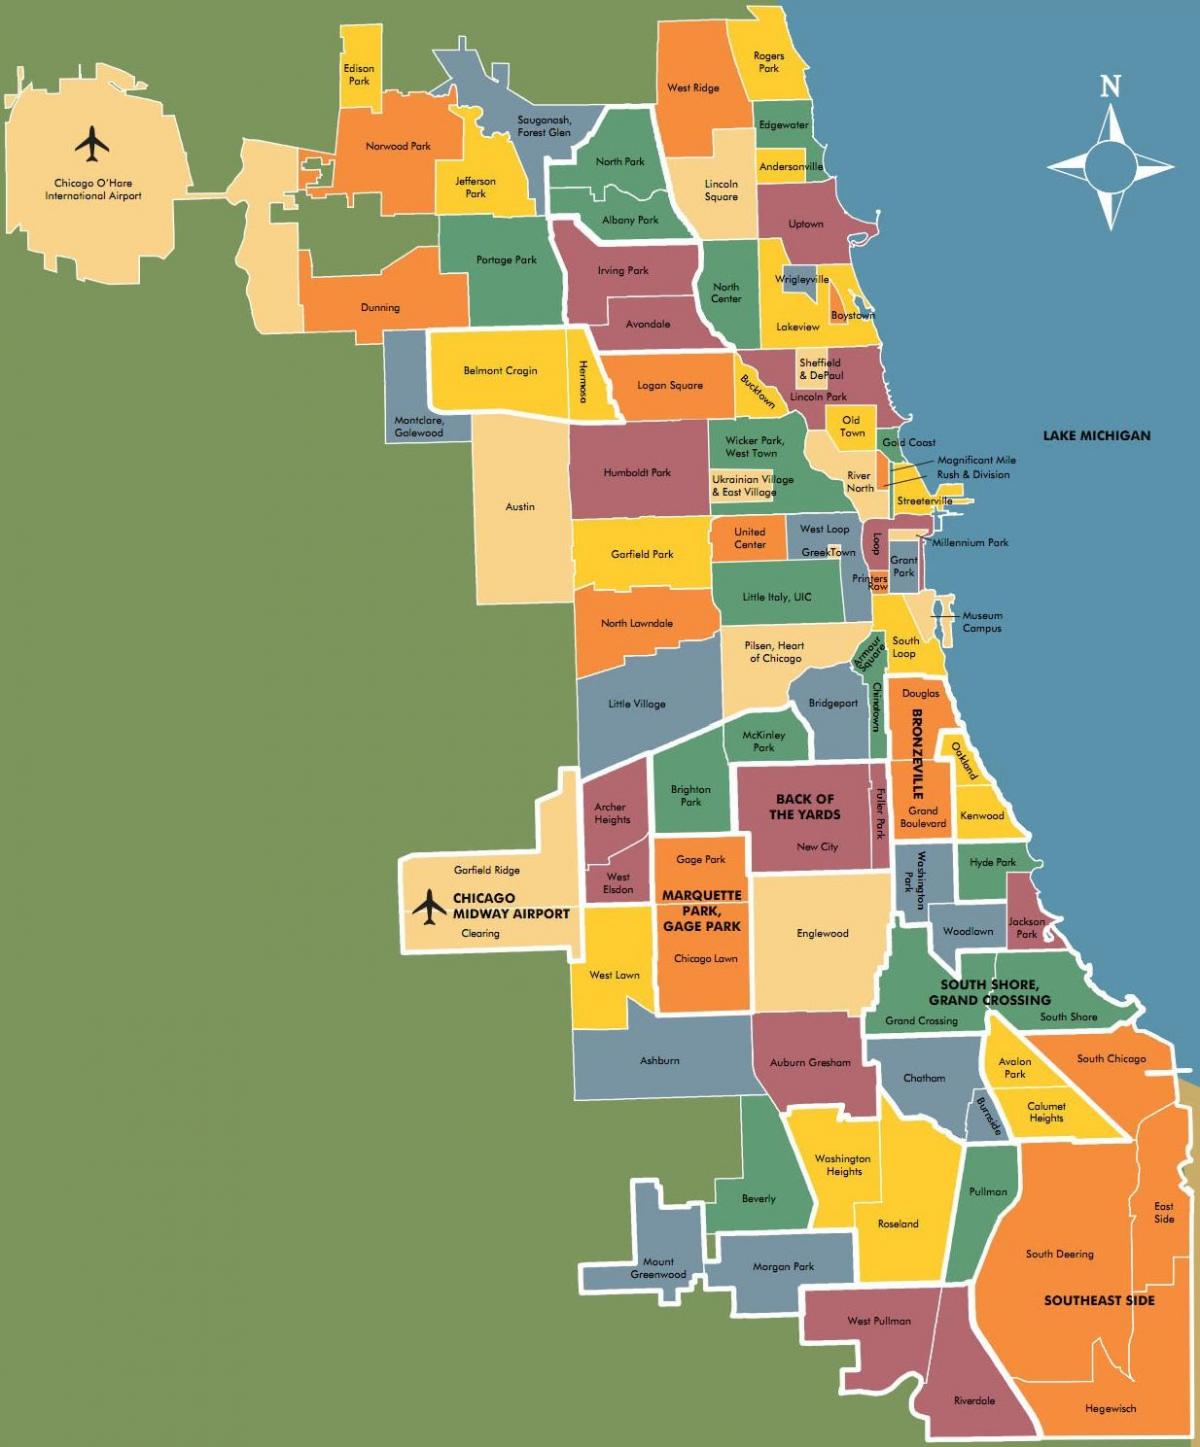 แผนที่ของ neighborhoods อยู่ในชิคาโก้